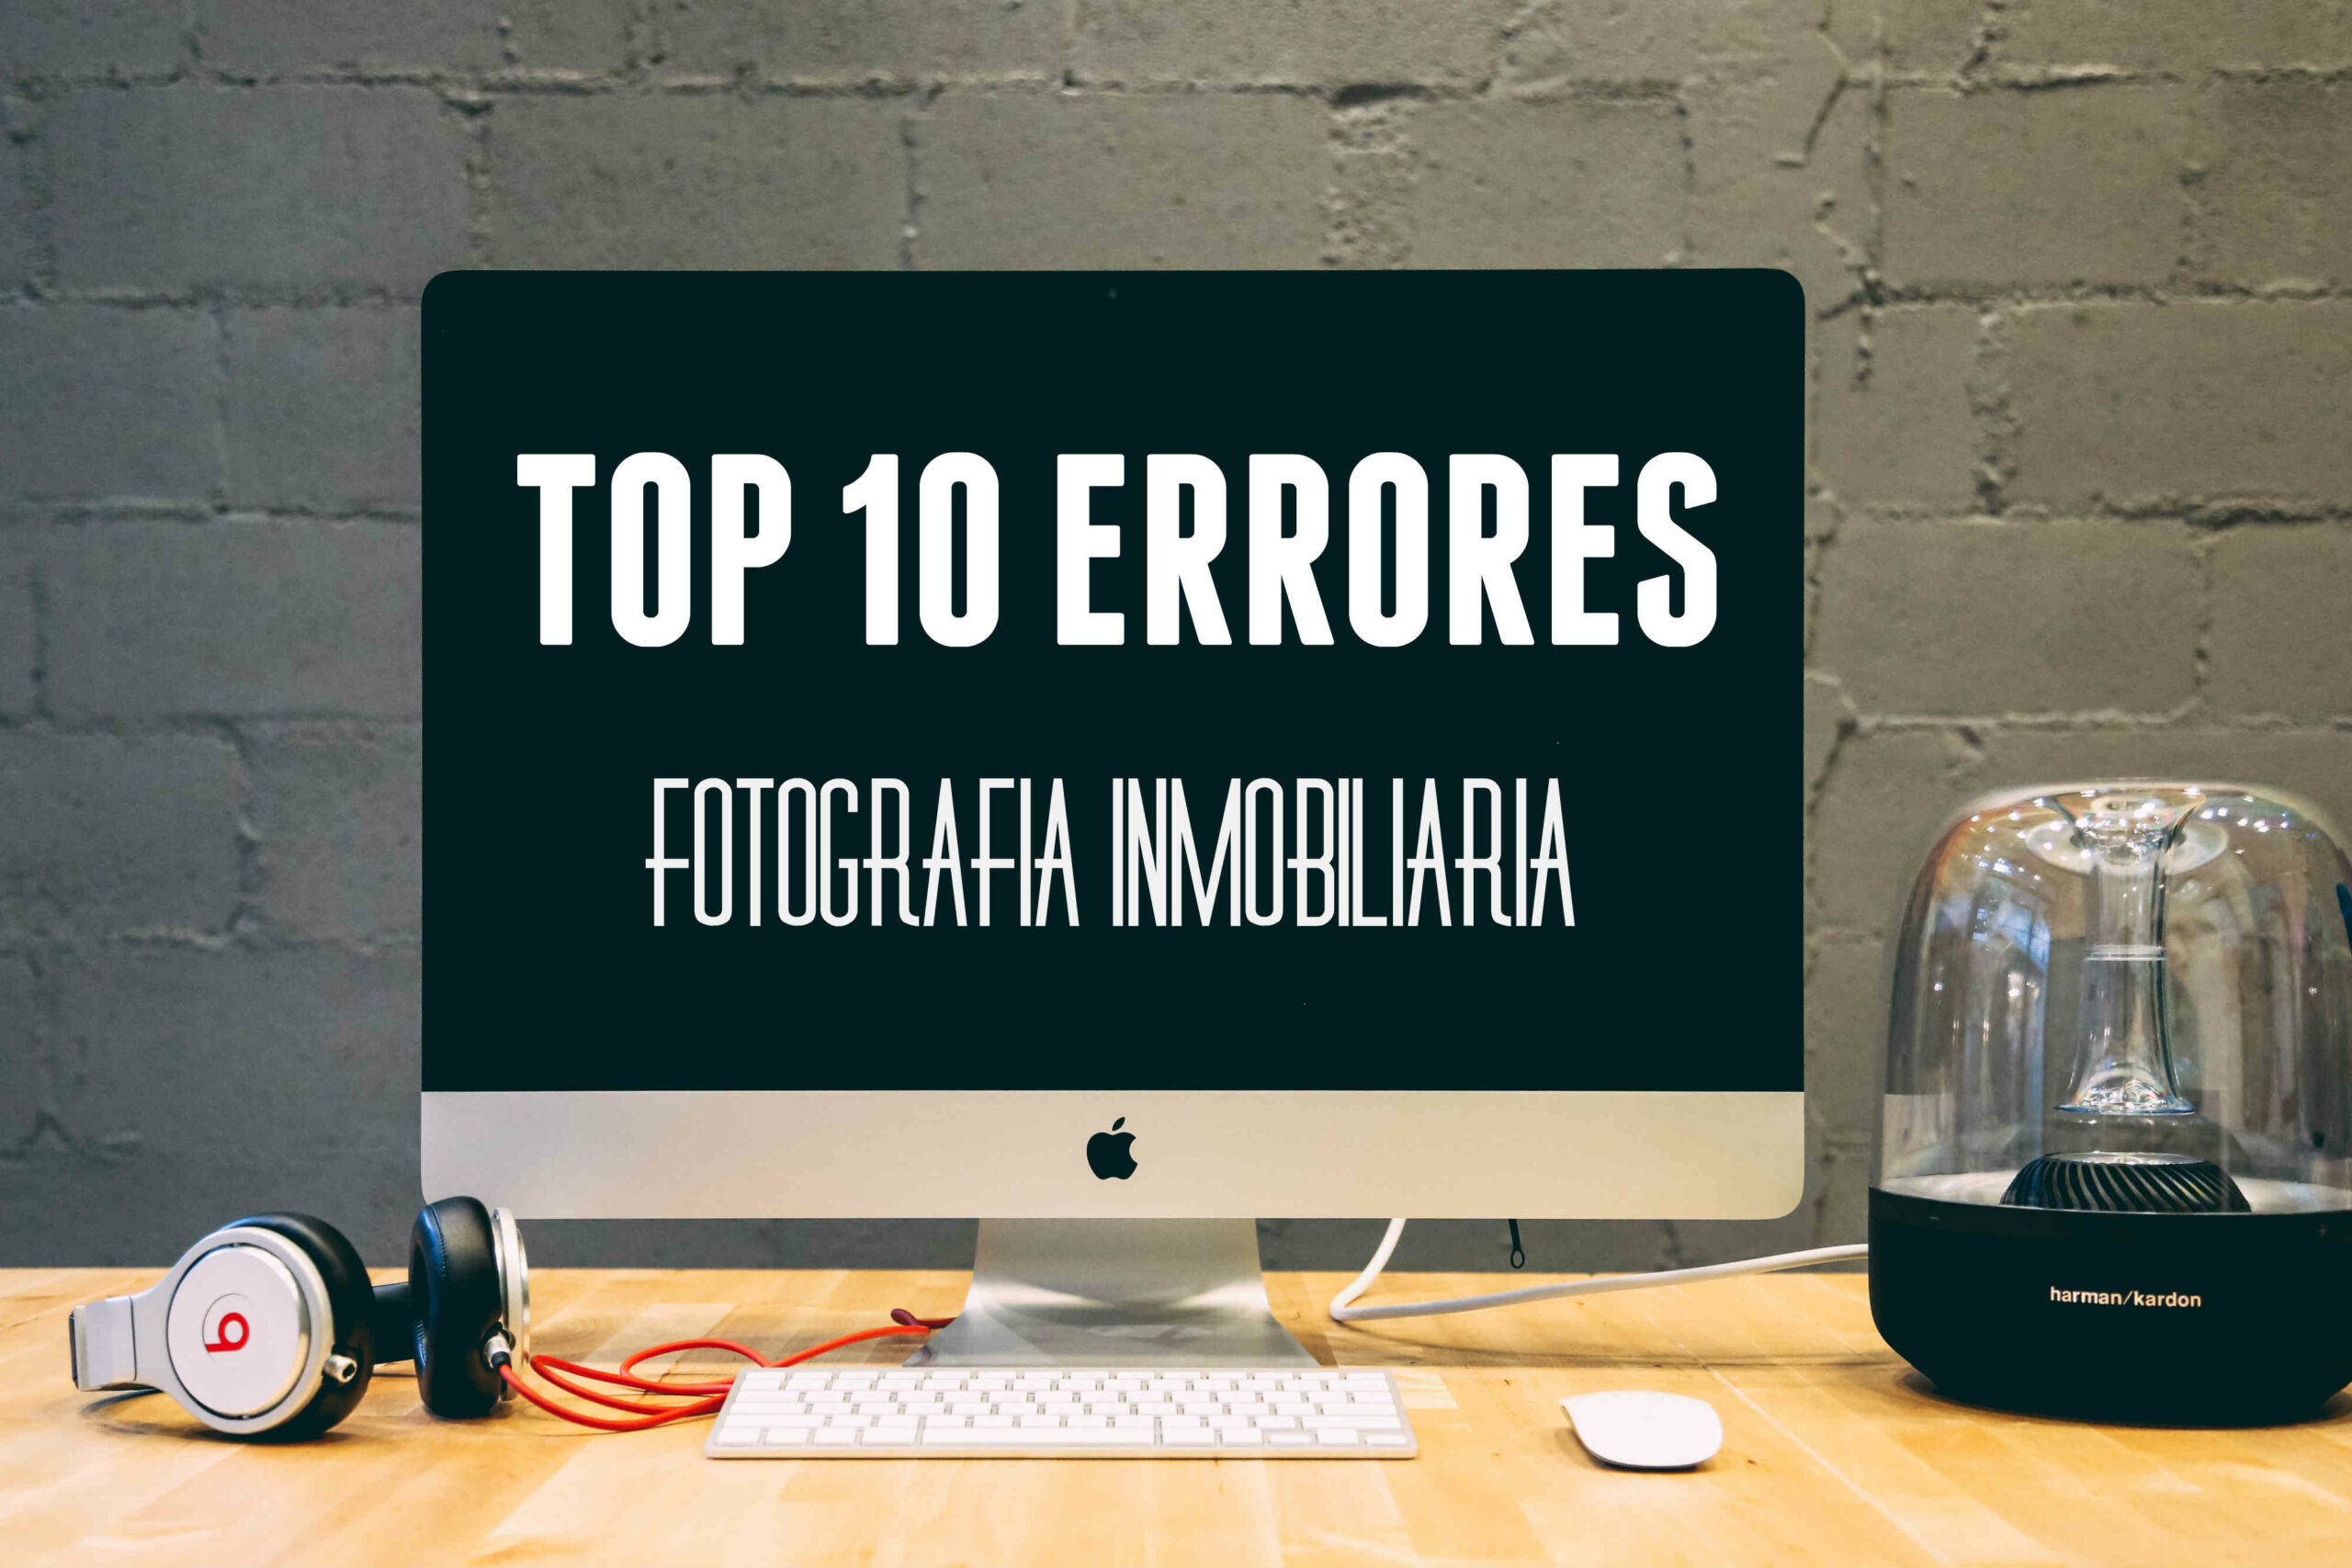 Top 10 Errores Fotografía Inmobiliaria